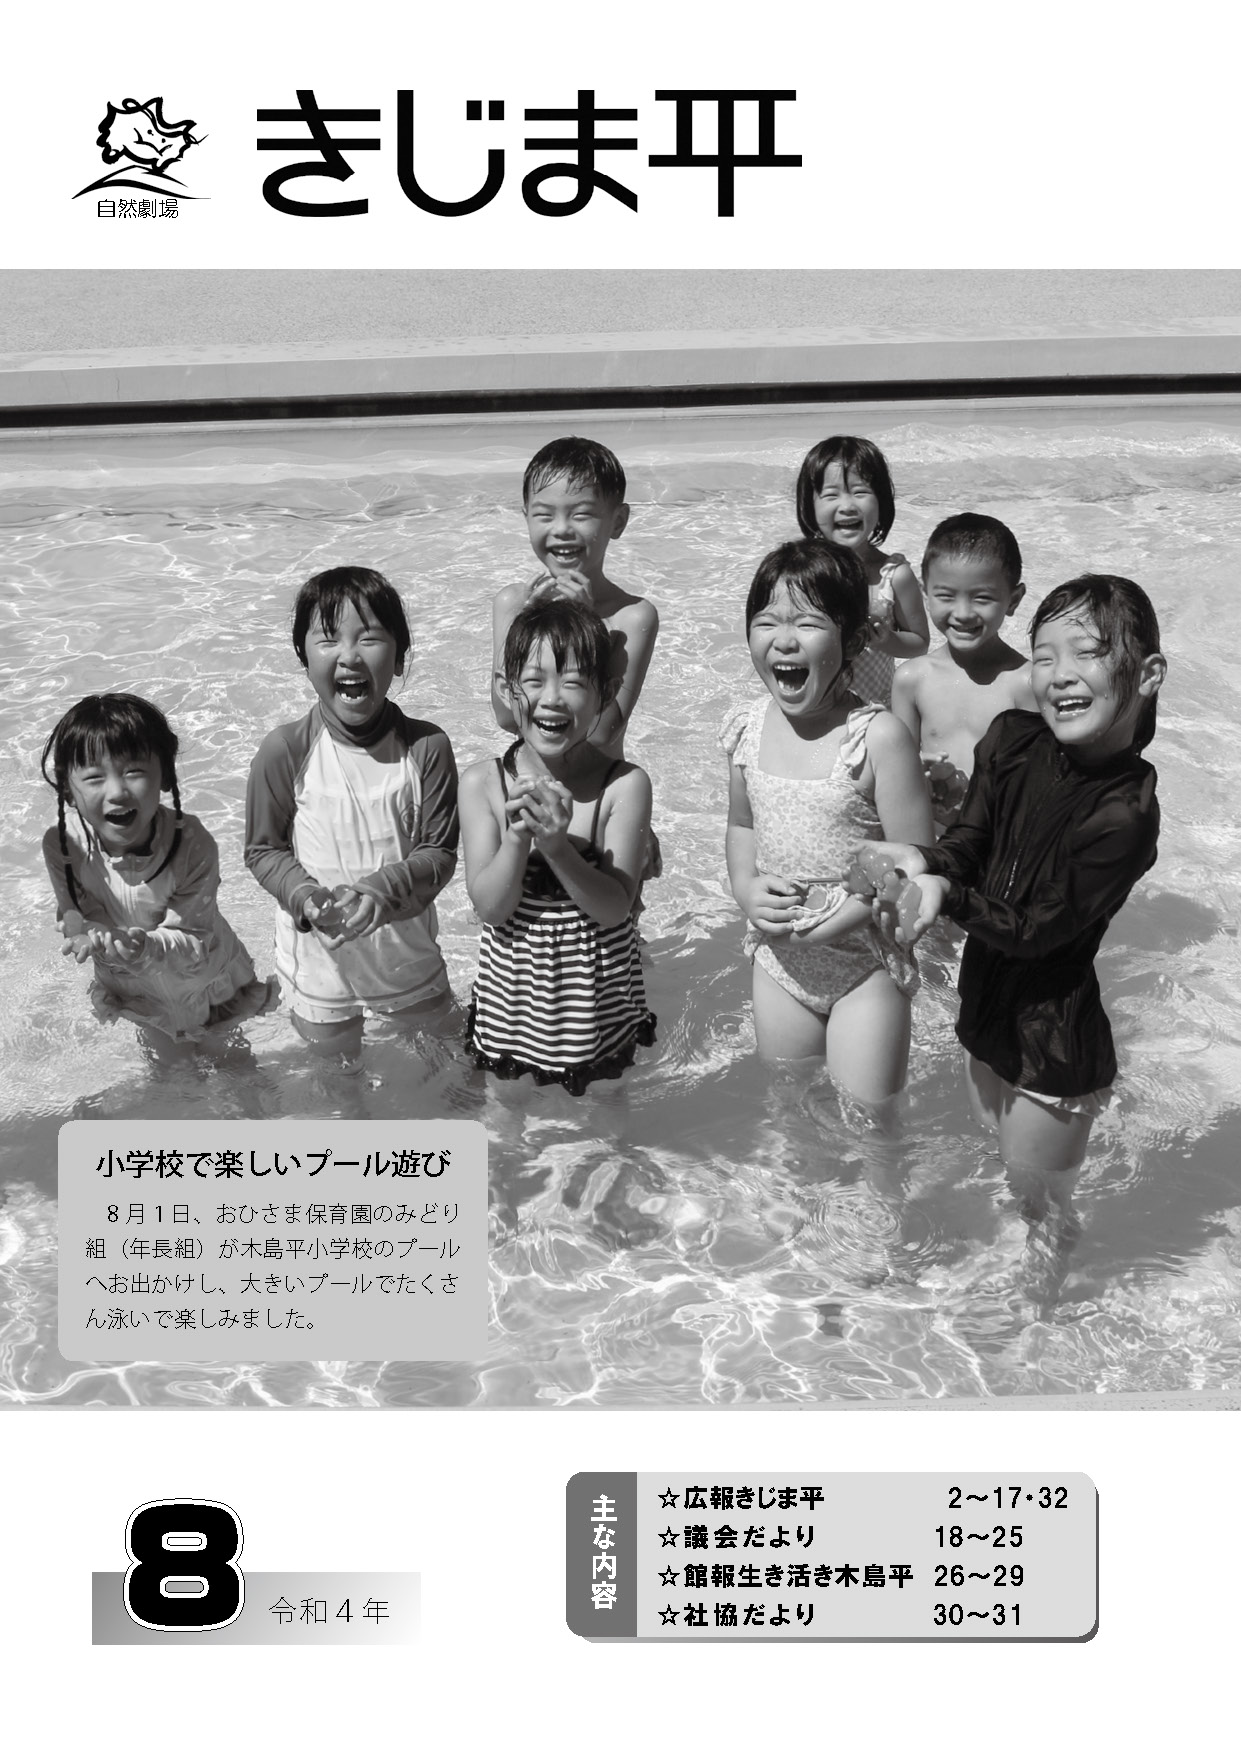 おひさま保育園の年長組が木島平小学校のプールで楽しく泳いでいる様子